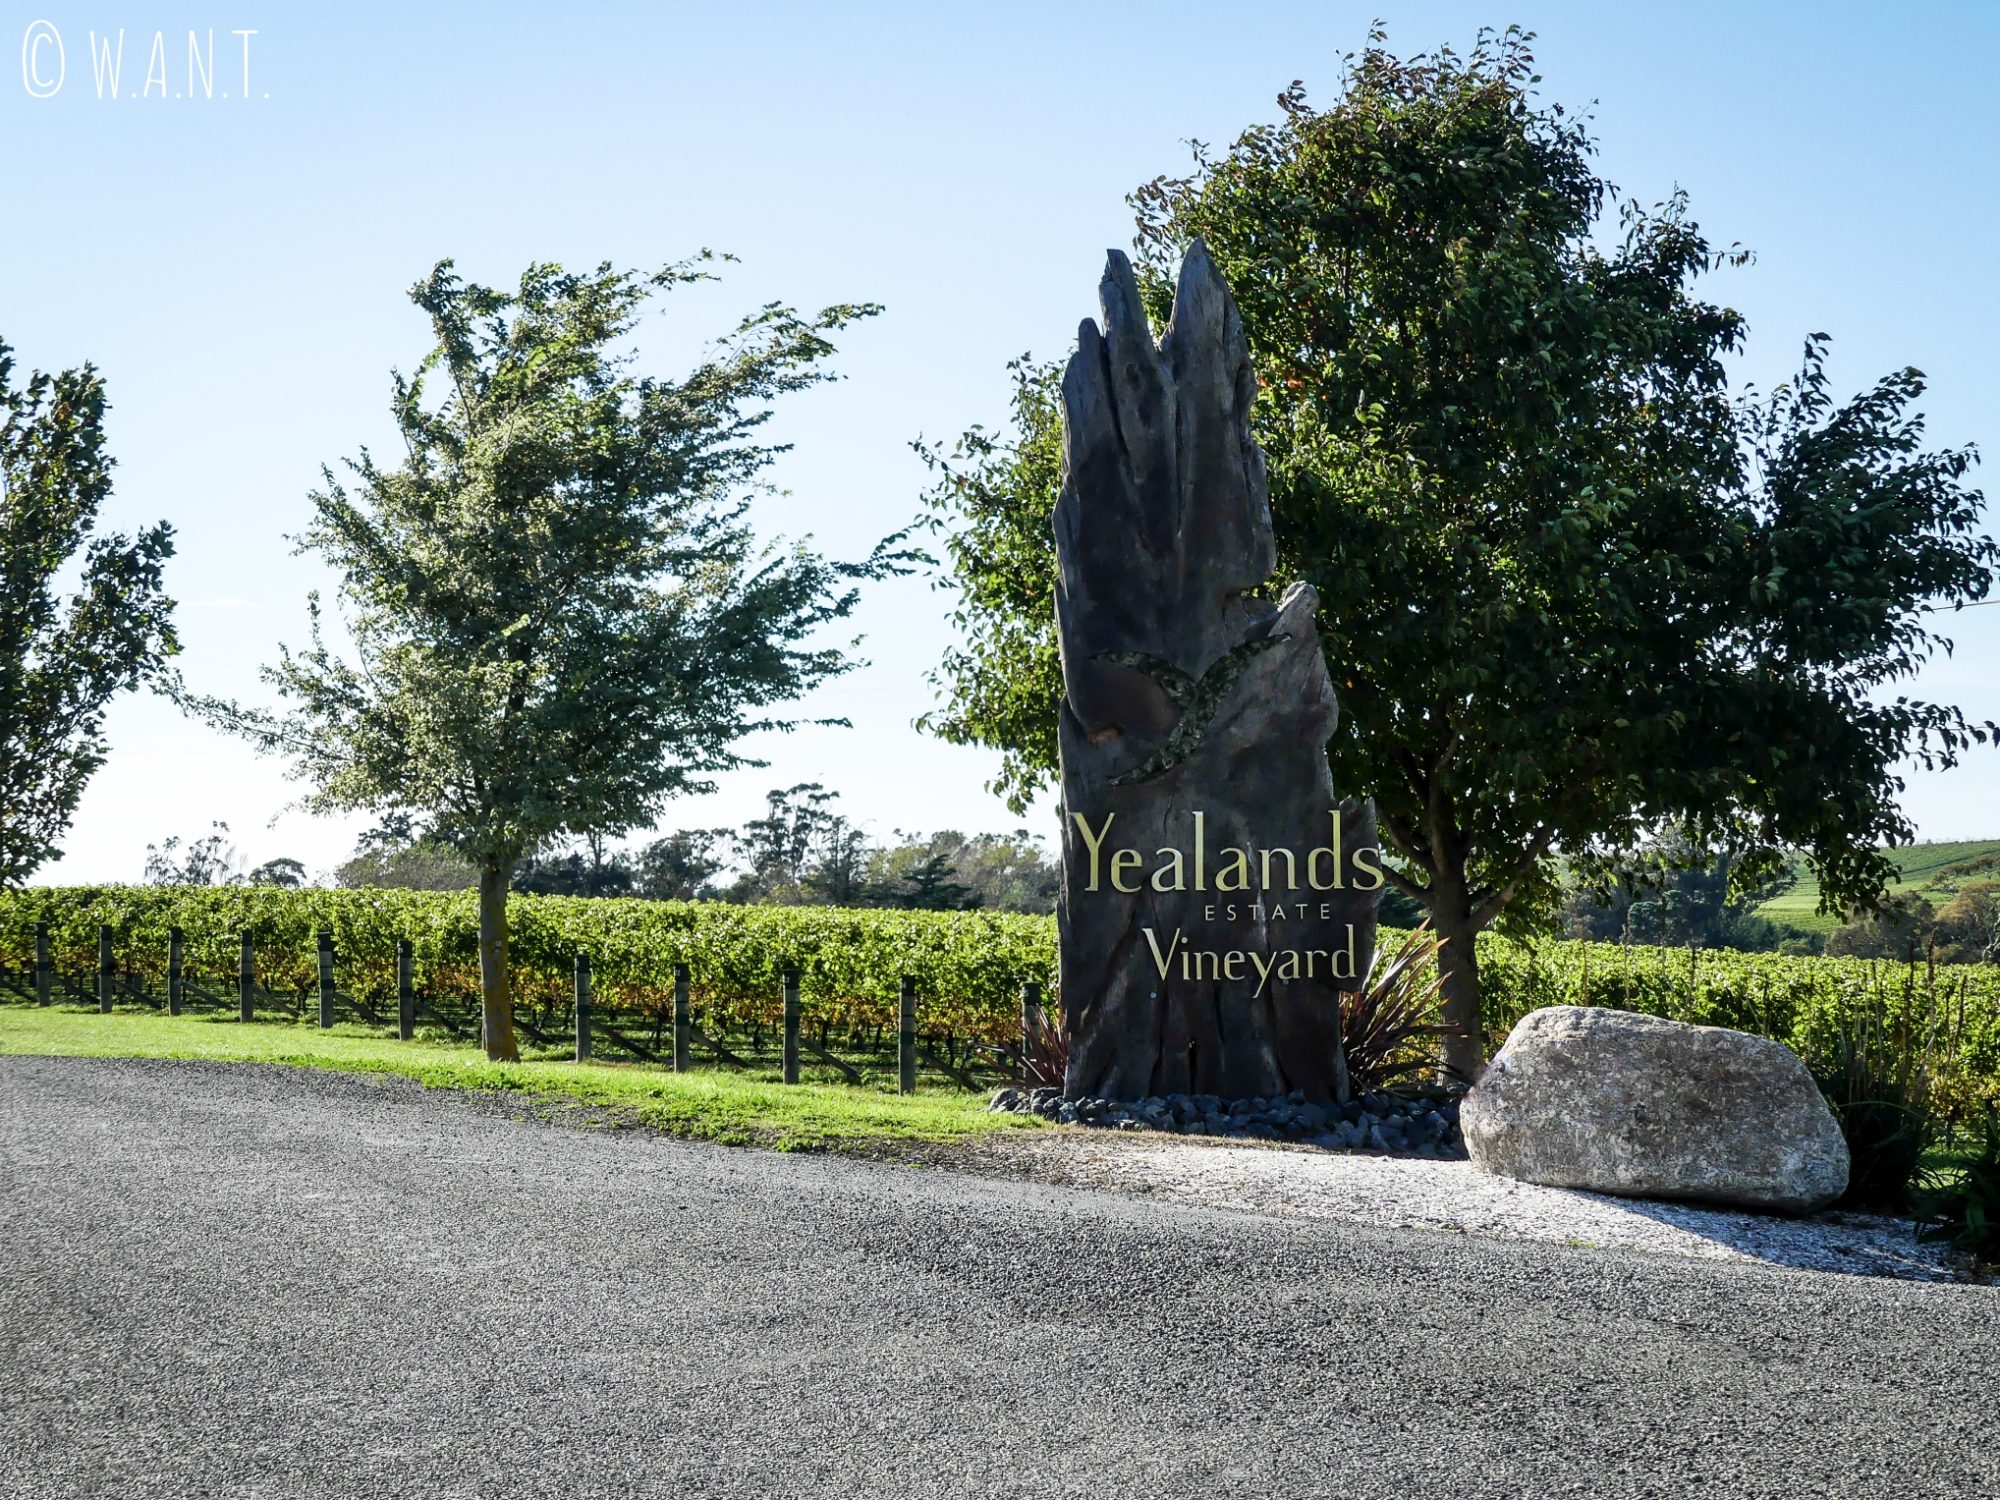 Entrée du domaine viticole Yealands dans la région de Malborough Sounds en Nouvelle-Zélande